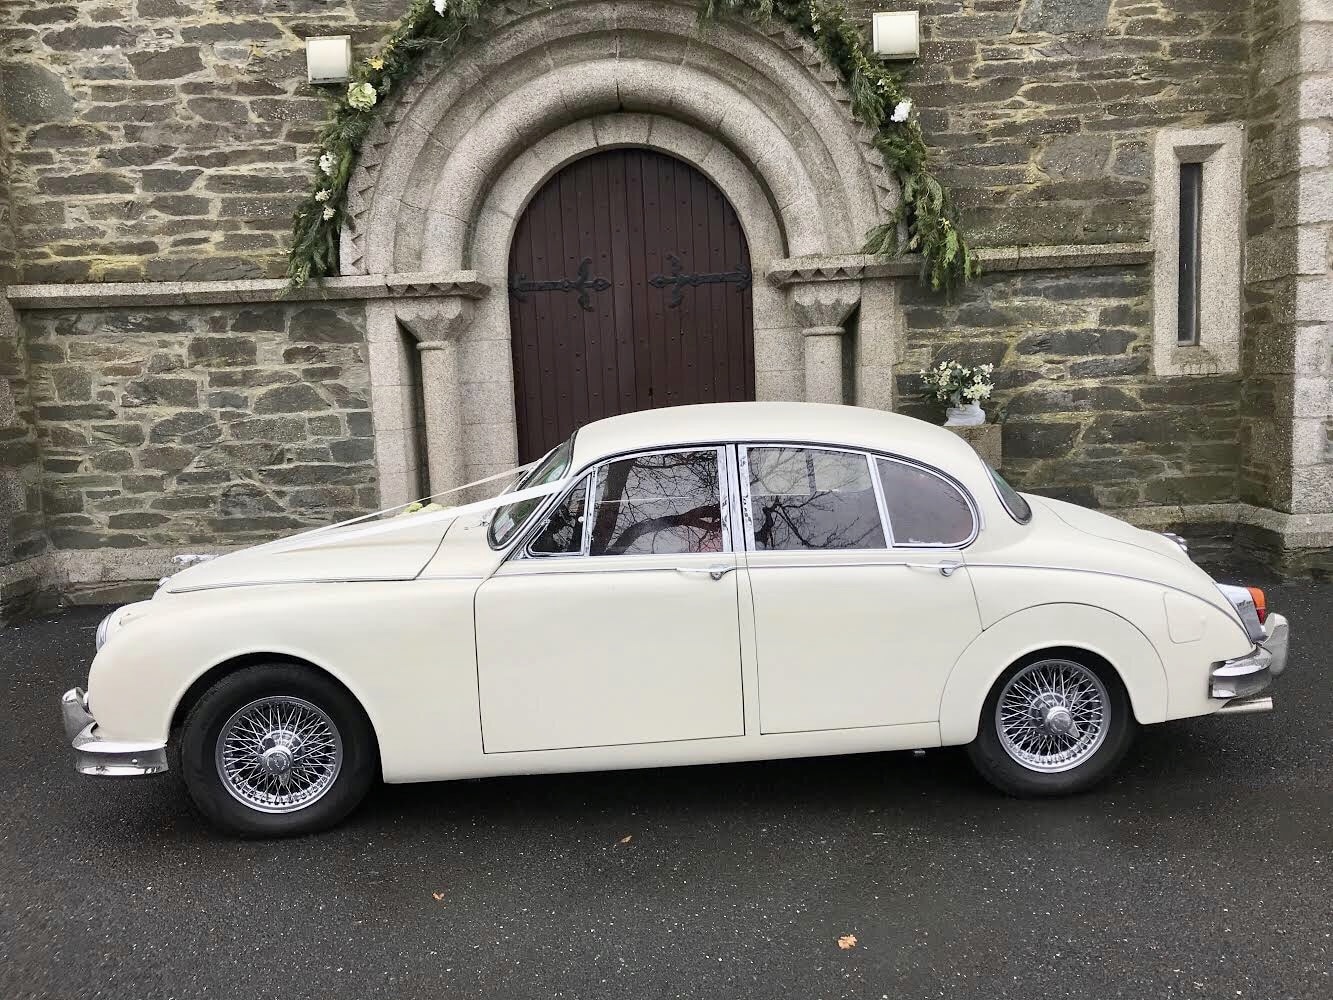 Our 1961 White Jaguar